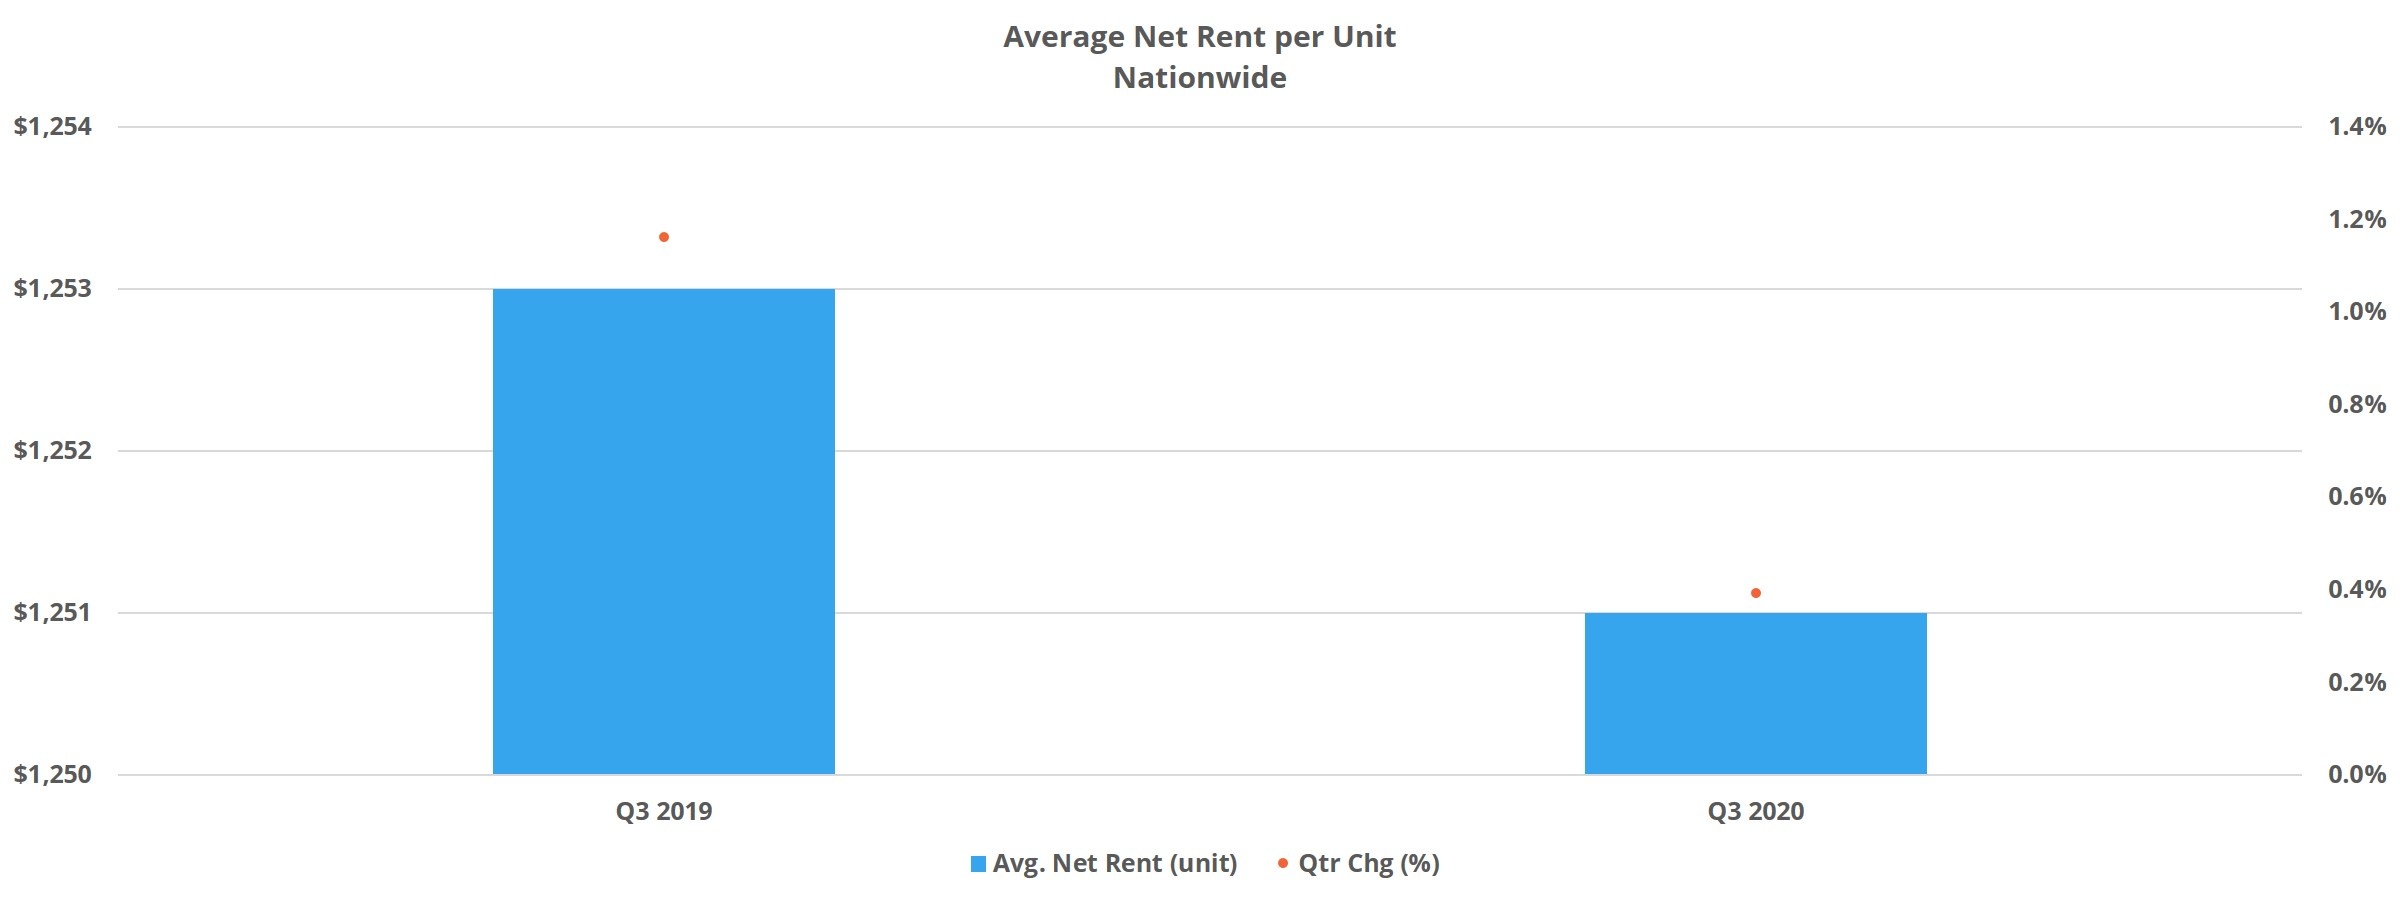 Average Net Rent per Unit